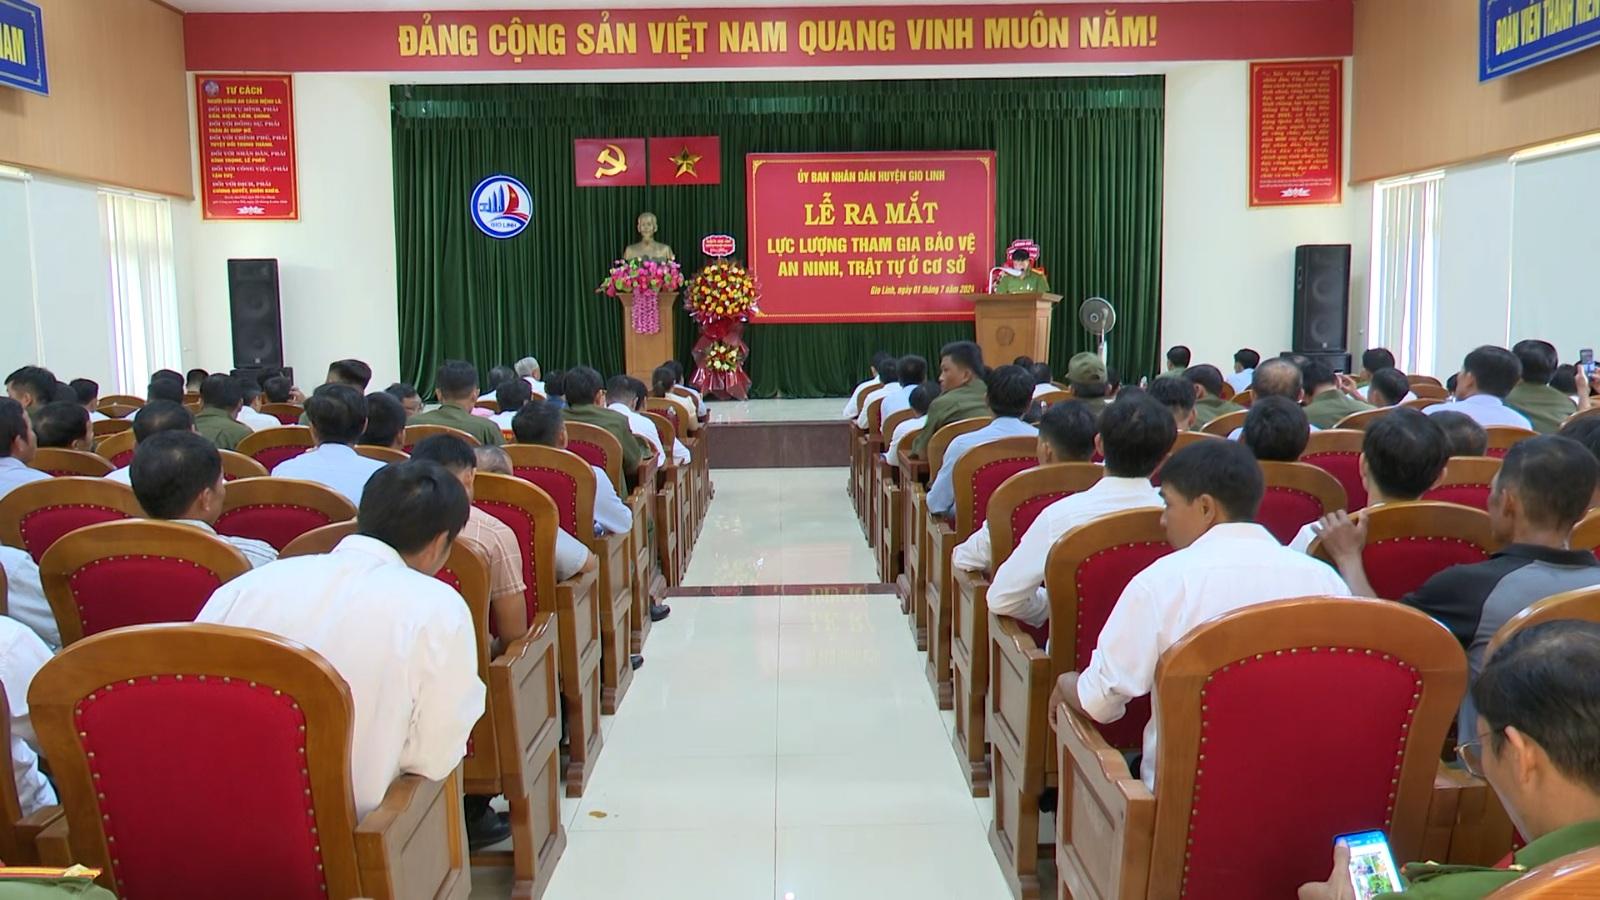 UBND huyện Gio Linh tổ chức Lễ ra mắt lực lượng tham gia bảo vệ an ninh trật tự ở cơ sở